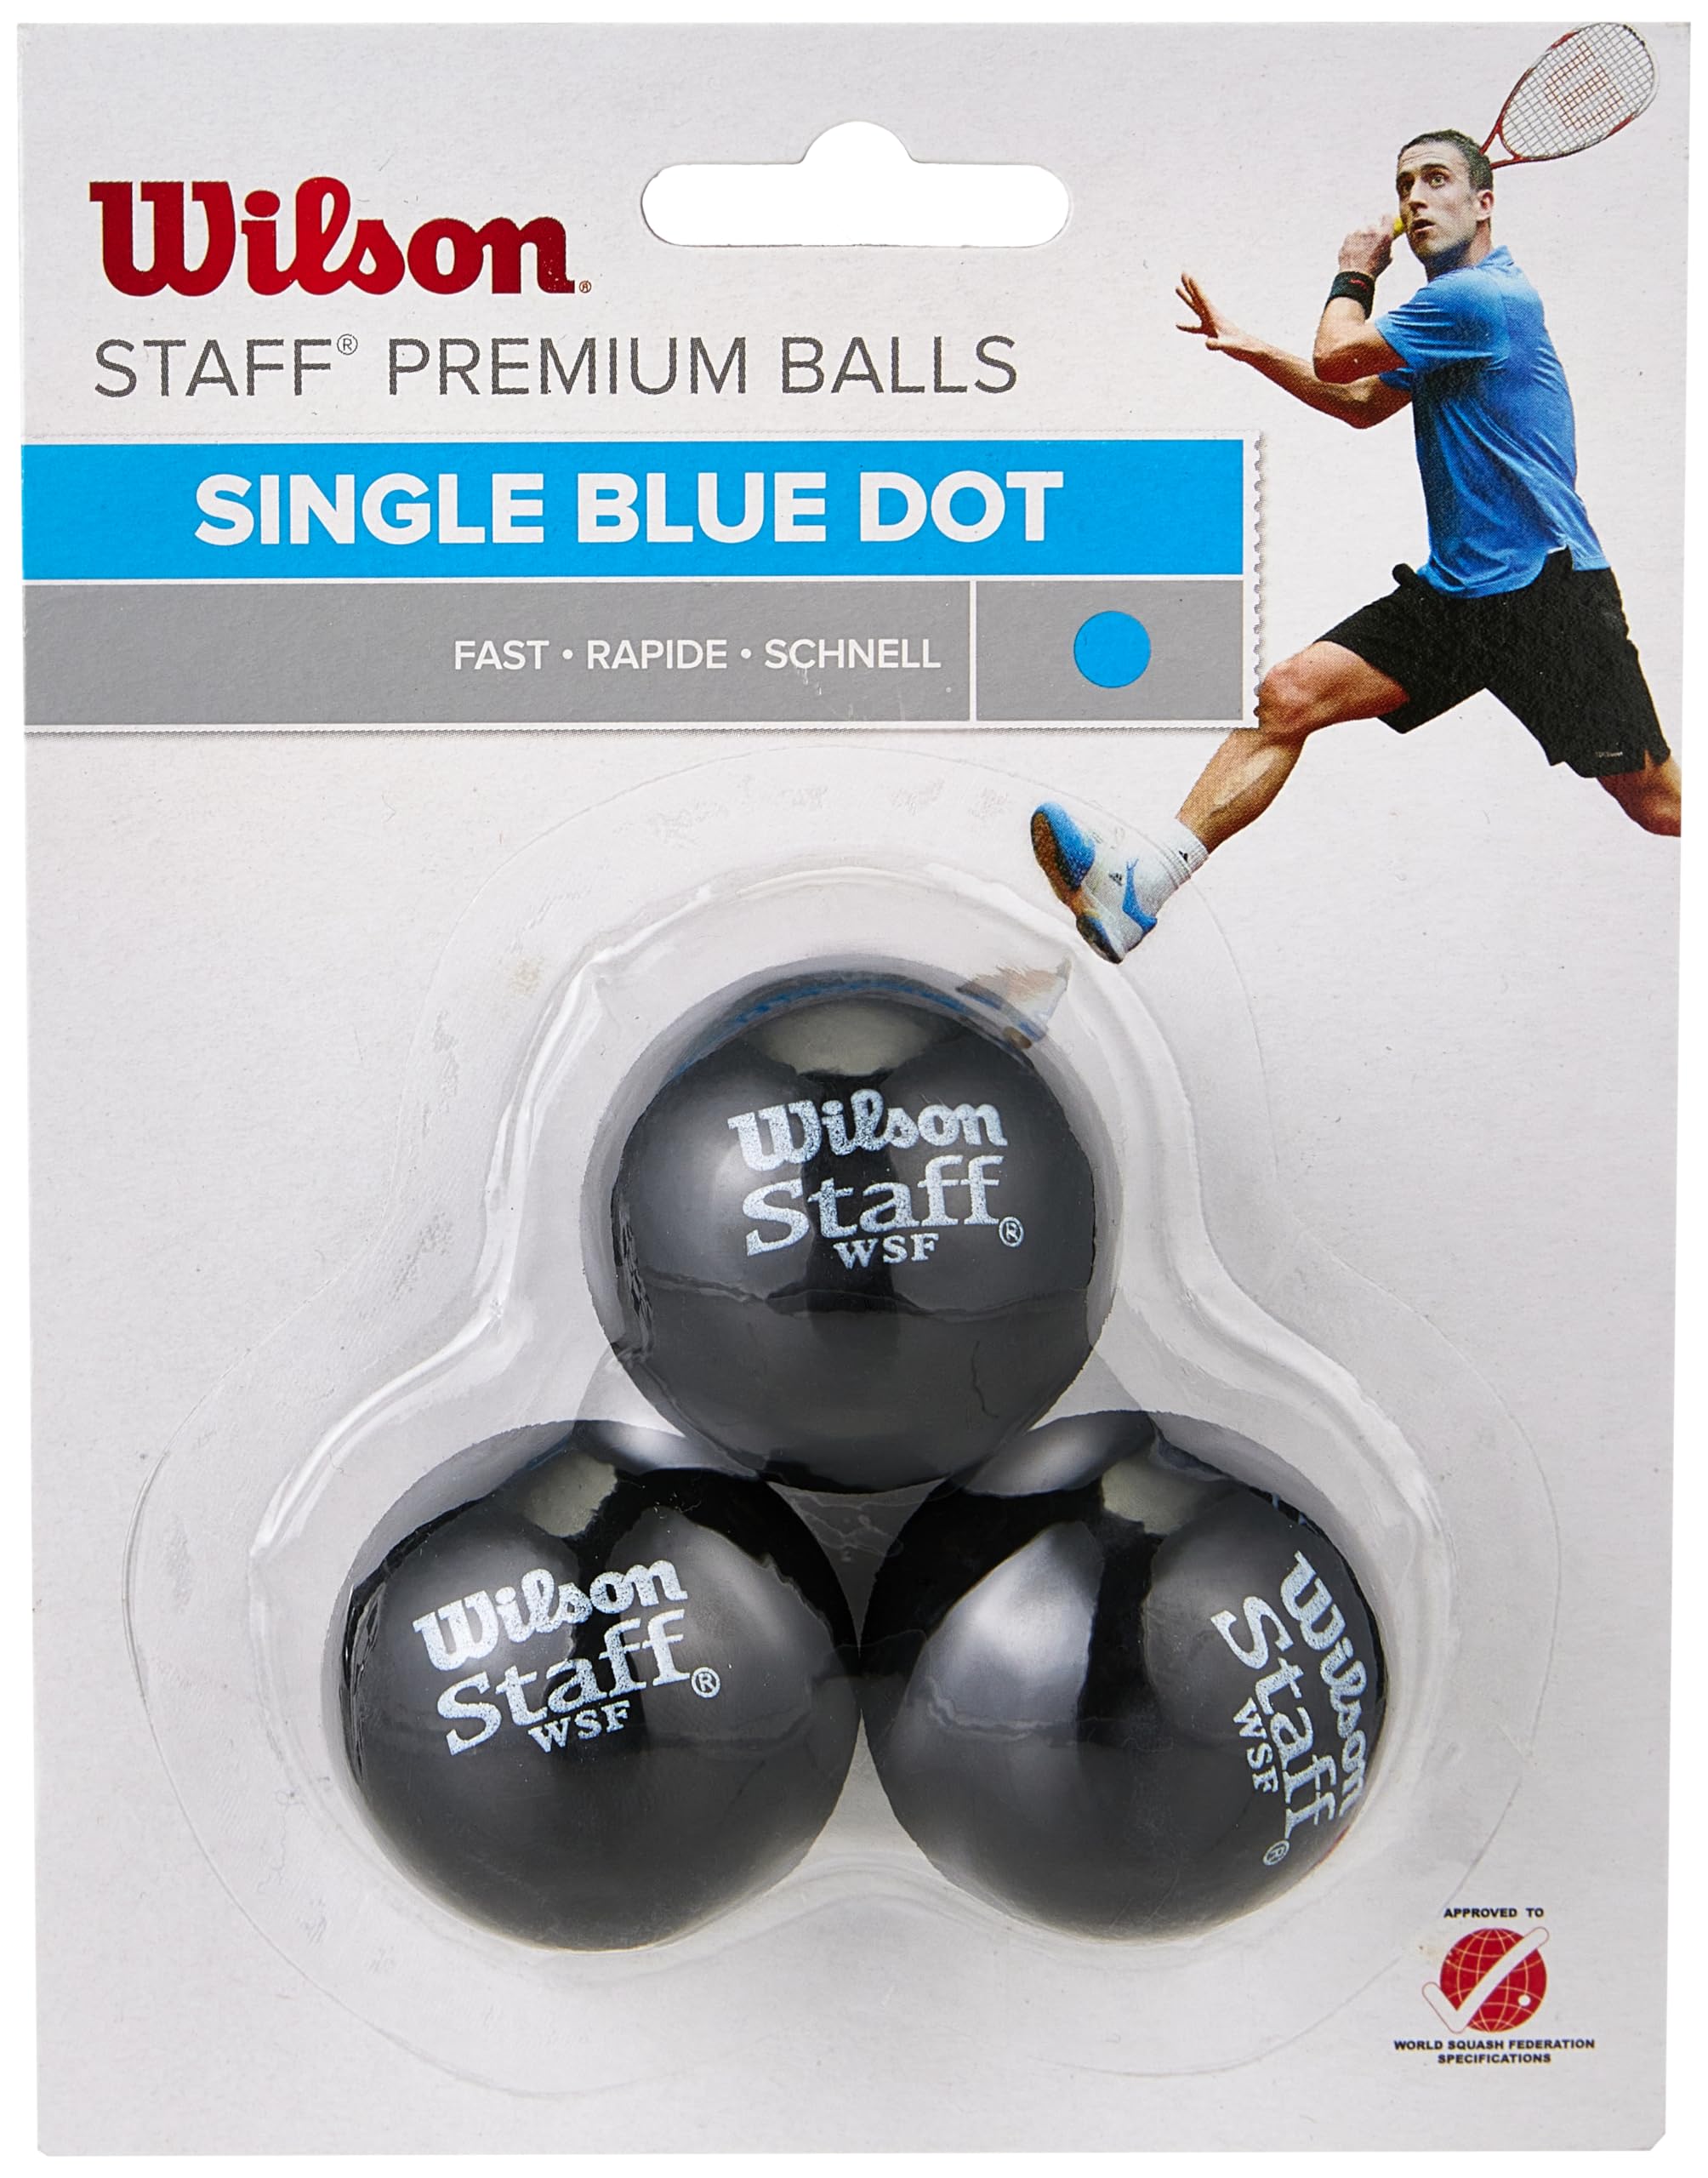 bien vendre Wilson Staff Squash Balls KioARKw7A en Fran